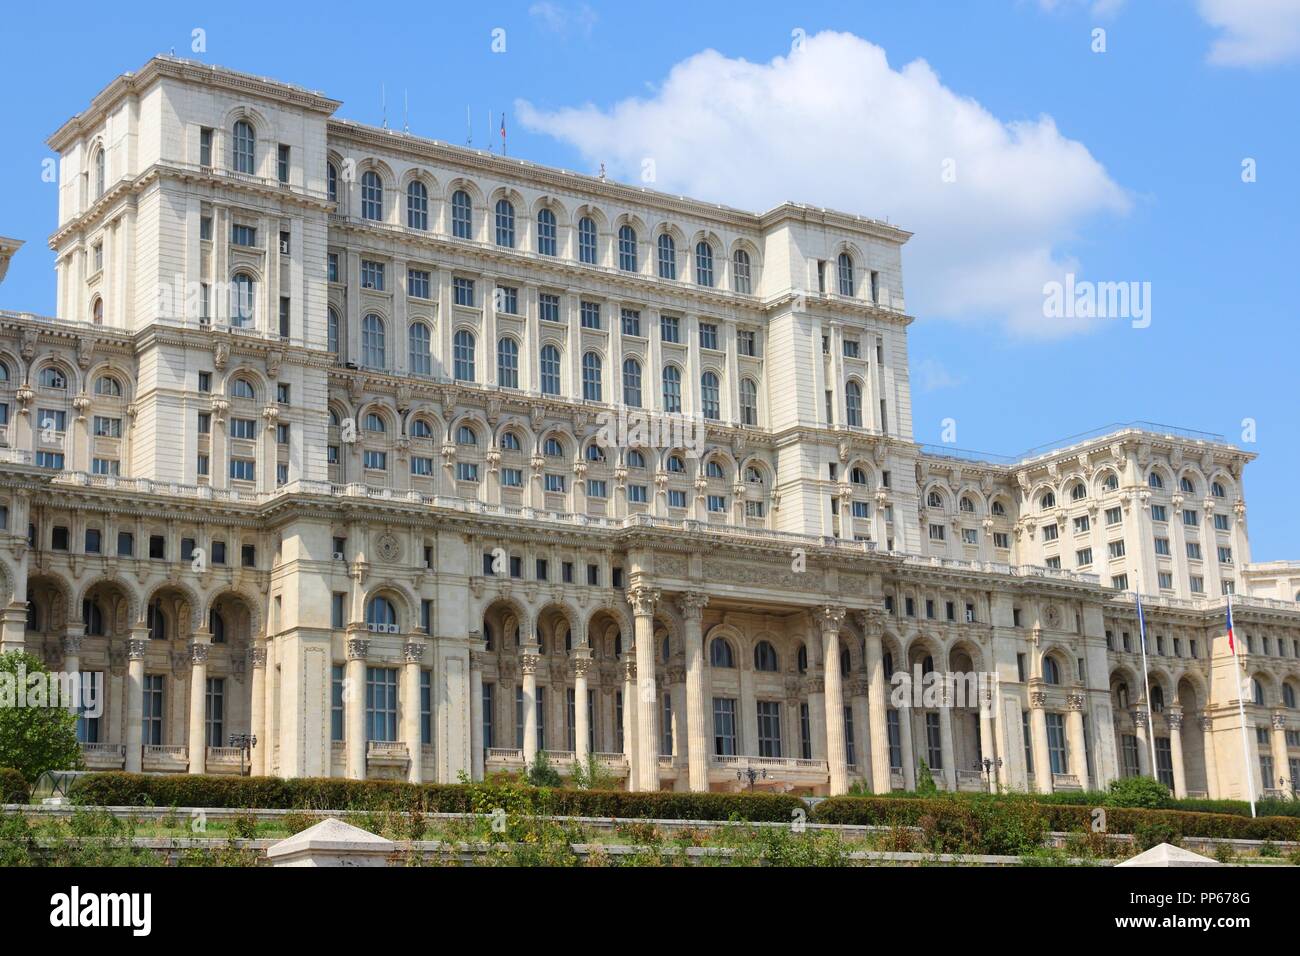 Bucharest, capital city of Romania. Palace of the Parliament (Romanian: Palatul Parlamentului). Stock Photo